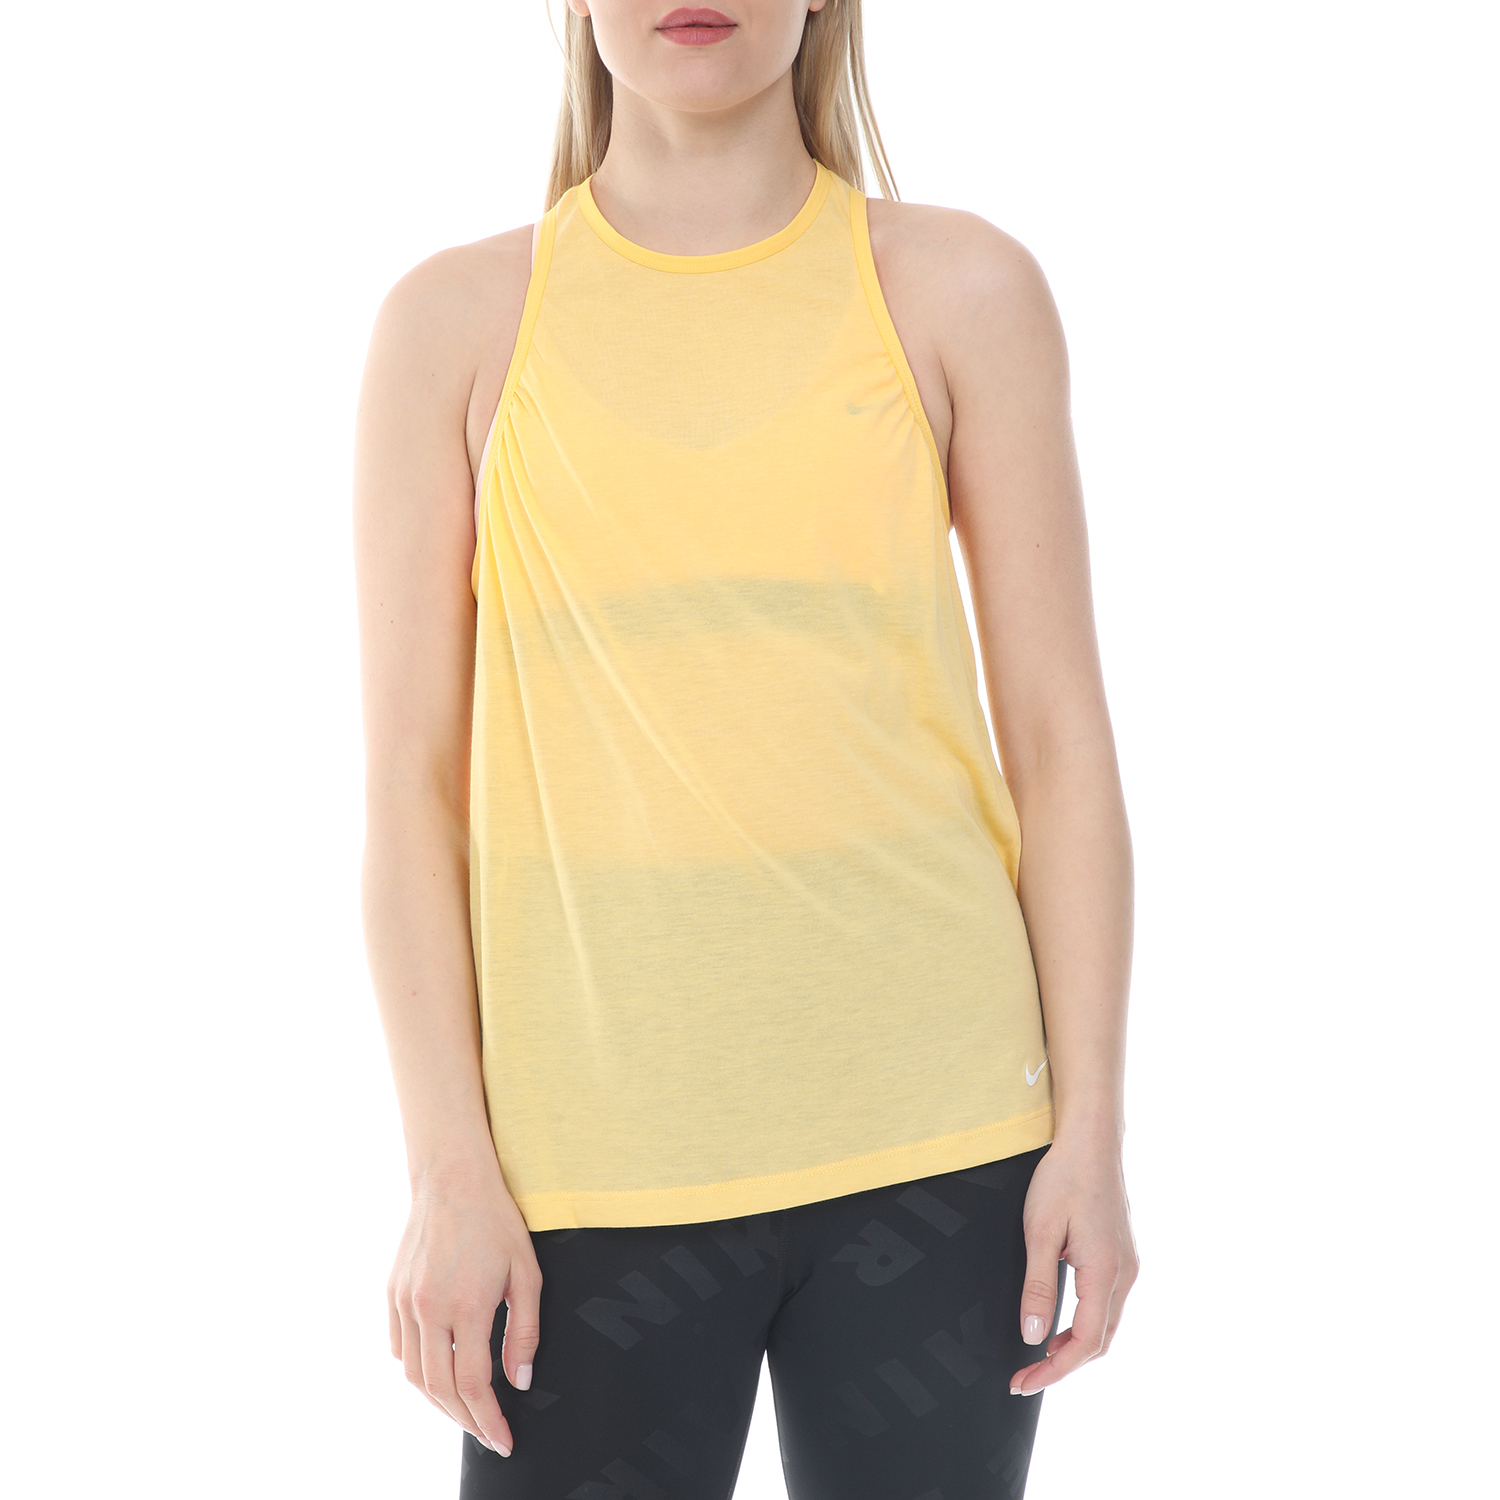 Γυναικεία/Ρούχα/Αθλητικά/T-shirt-Τοπ NIKE - Γυναικείο top NIKE TANK ICN CLSH BST κίτρινο